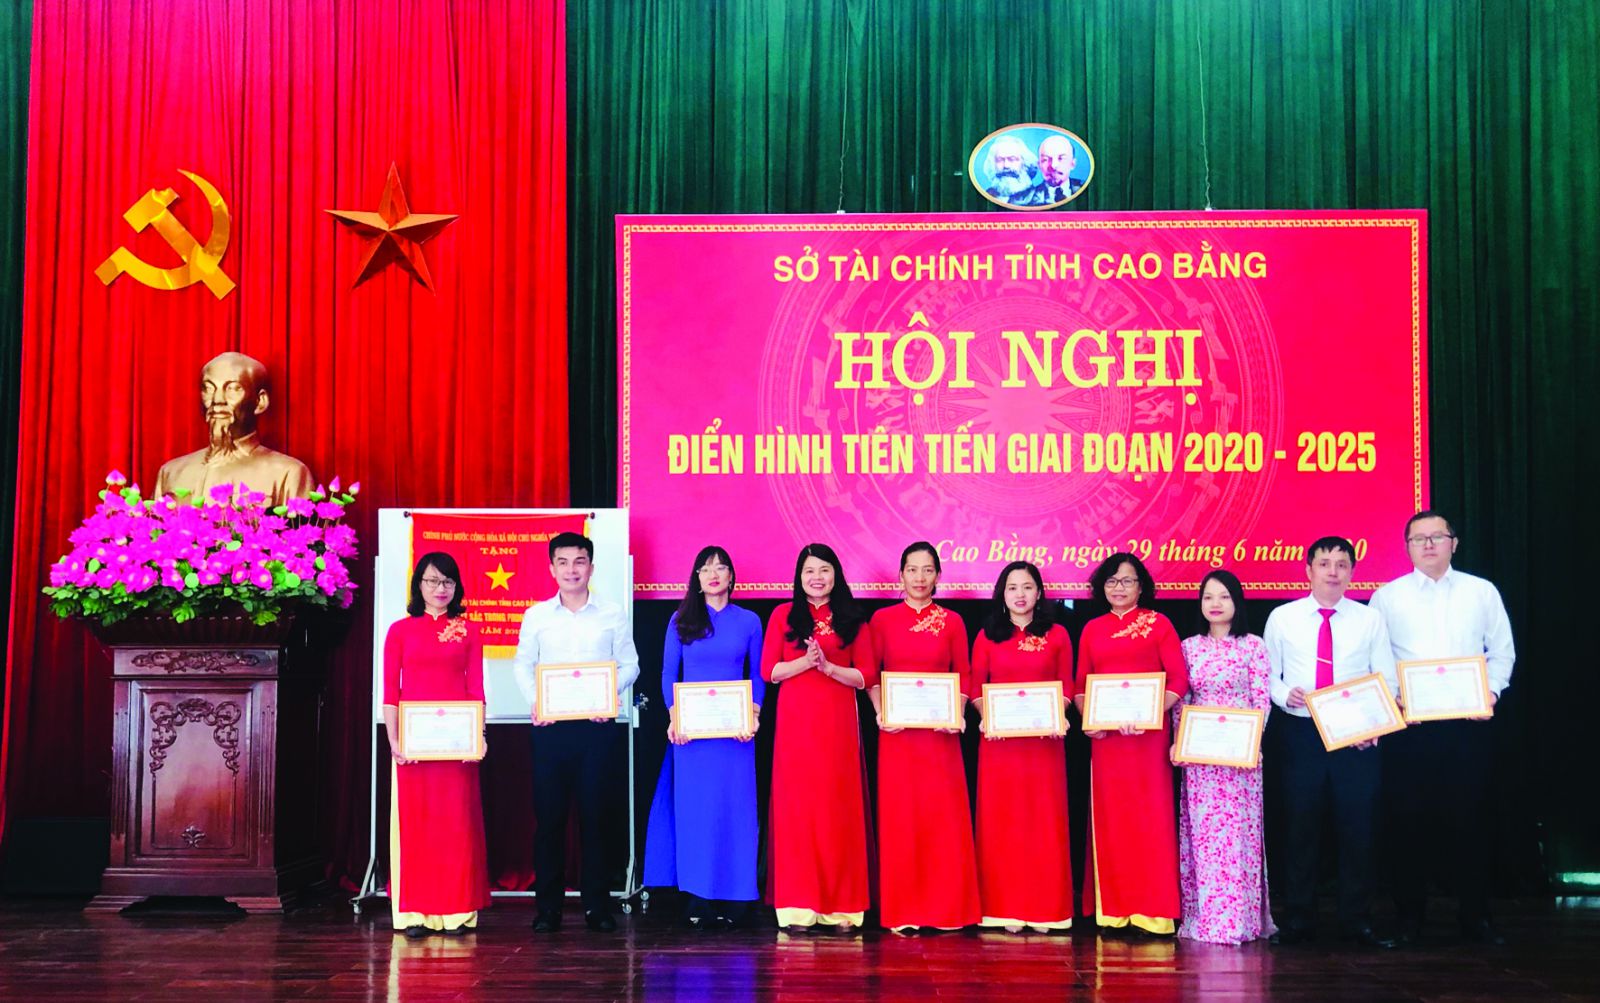  Hội nghị điển hình tiên tiên giai đoạn 2020- 2025 của Sở Tài Chính, tỉnh Cao Bằng